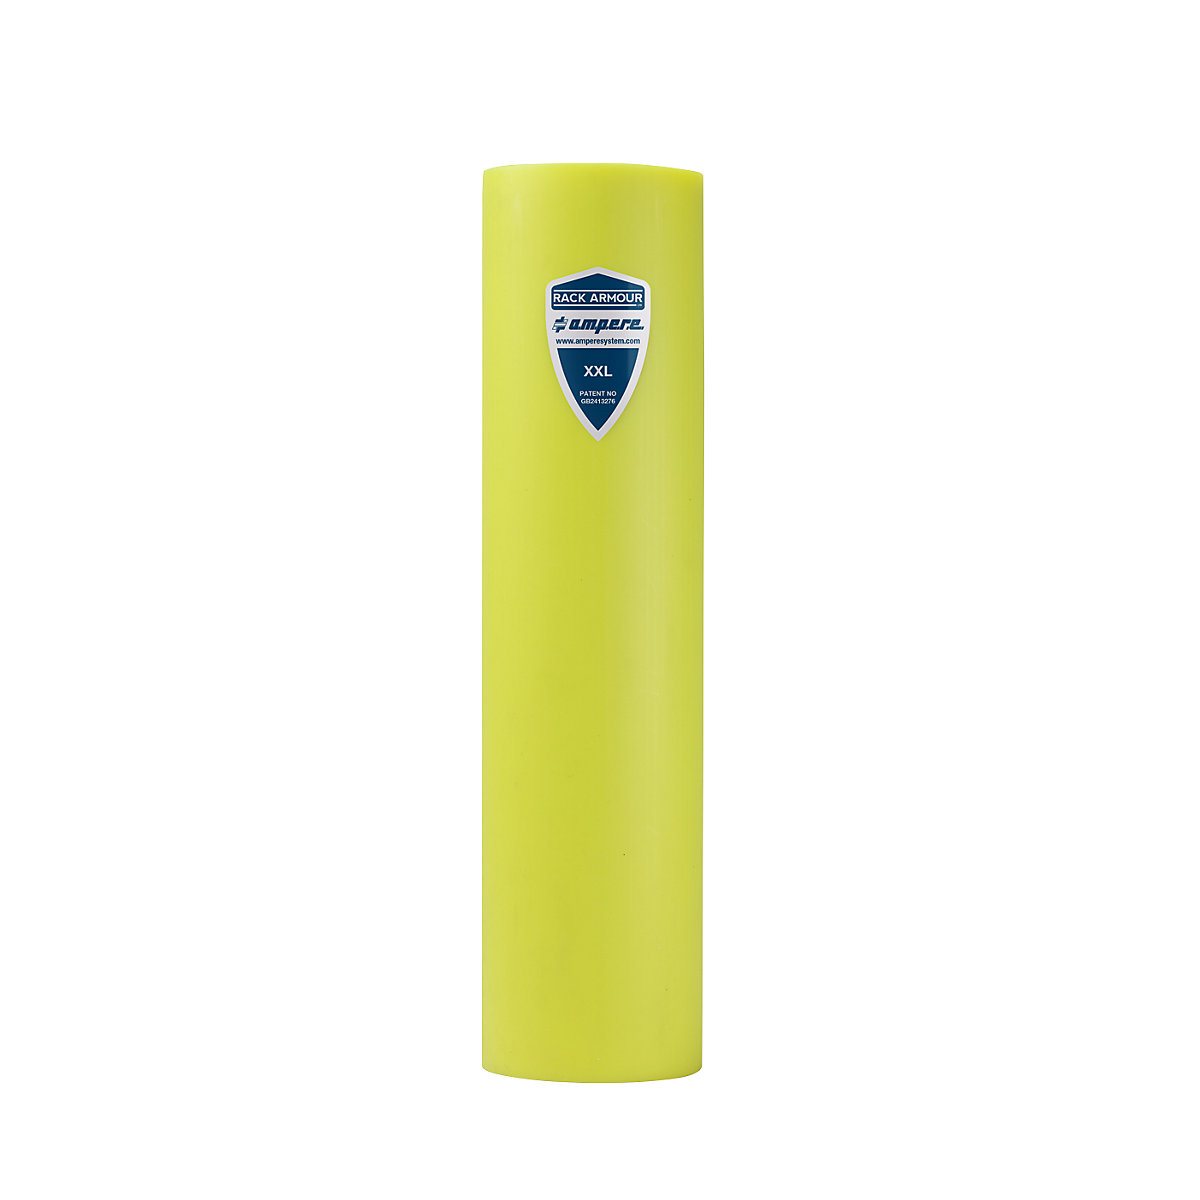 Protección antichoque para estanterías – Ampere, de plástico amarillo, anchura del poste de estantería 111 – 120 mm-17